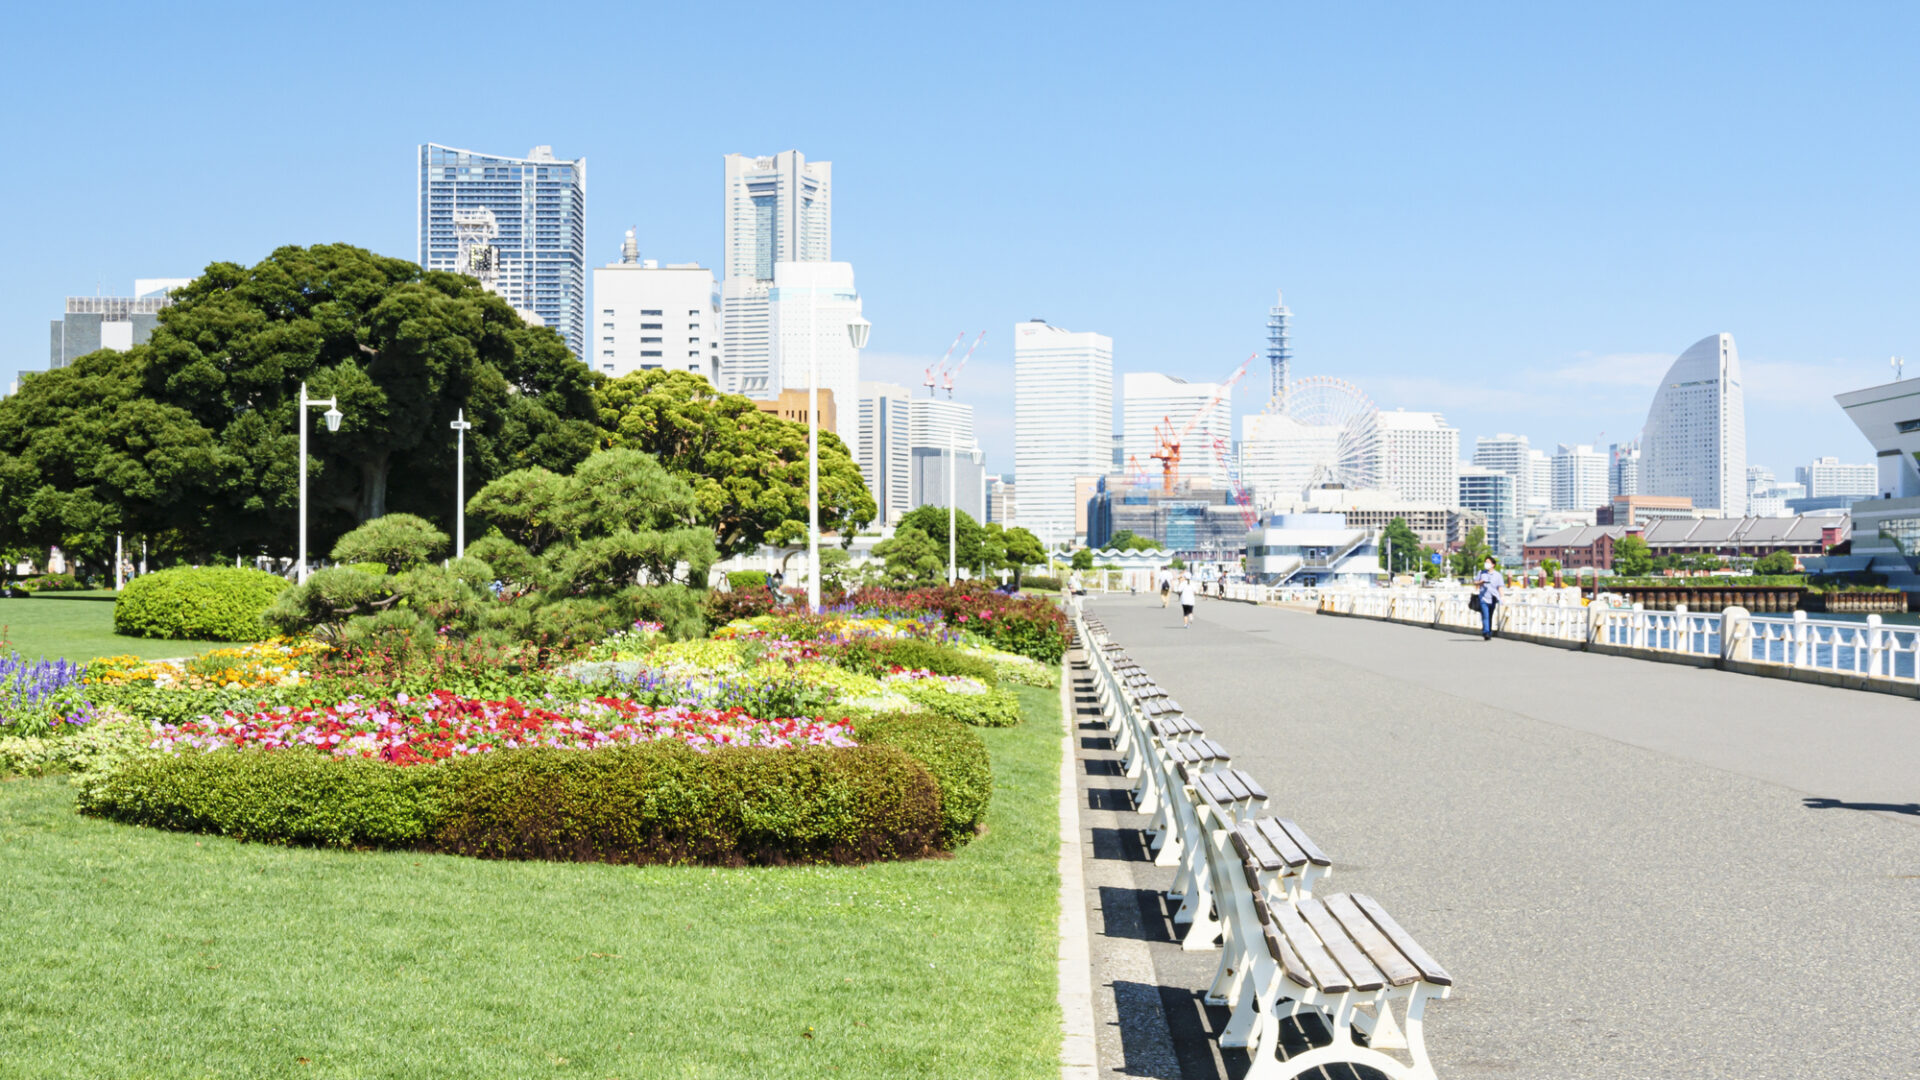 横浜 モデル コース 半日山下公園に咲く花壇の花と遊歩道